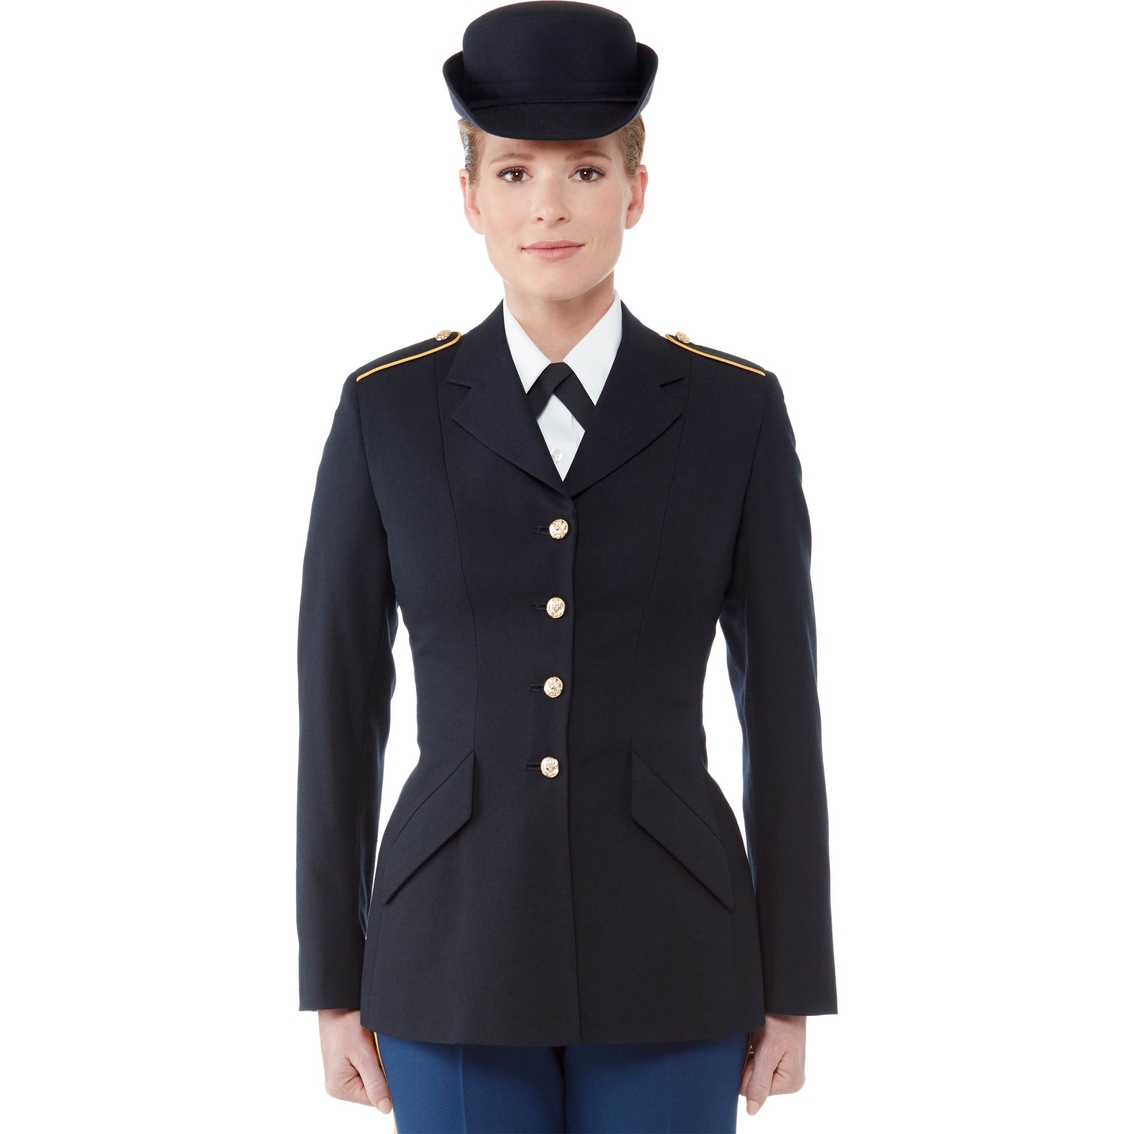 Army Dress Blue Uniform Pictures 64